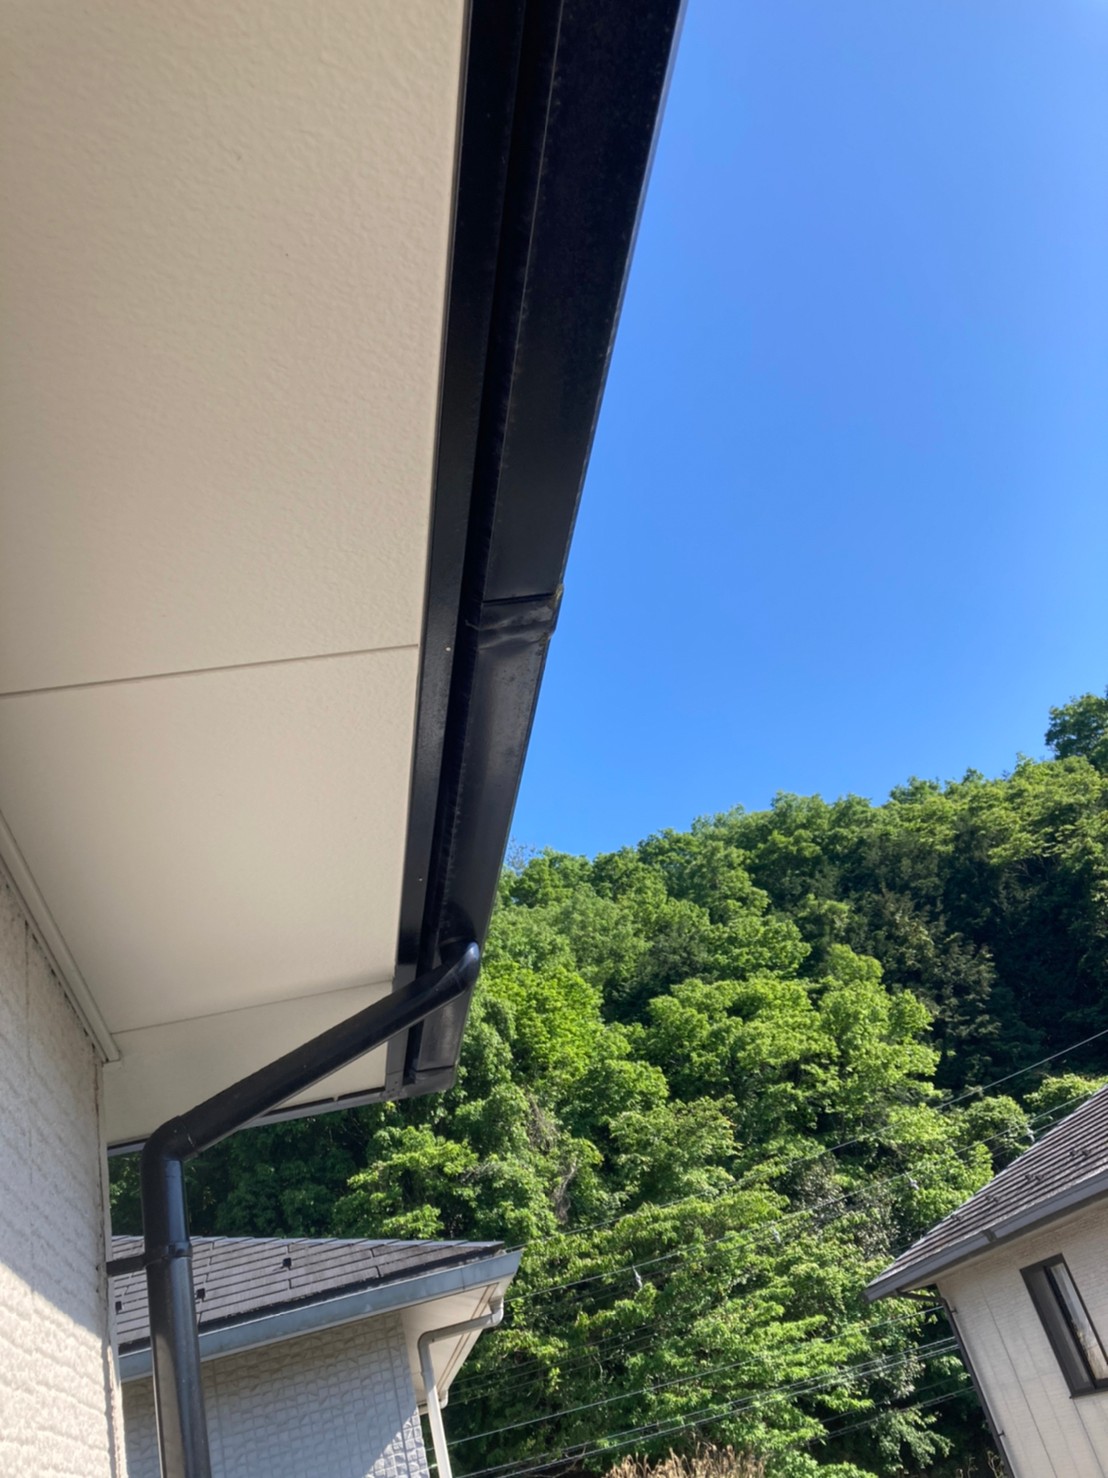 広島市安佐北区『給湯器に雨が当たり雨音がする』とのご相談。屋根の無料調査へ！